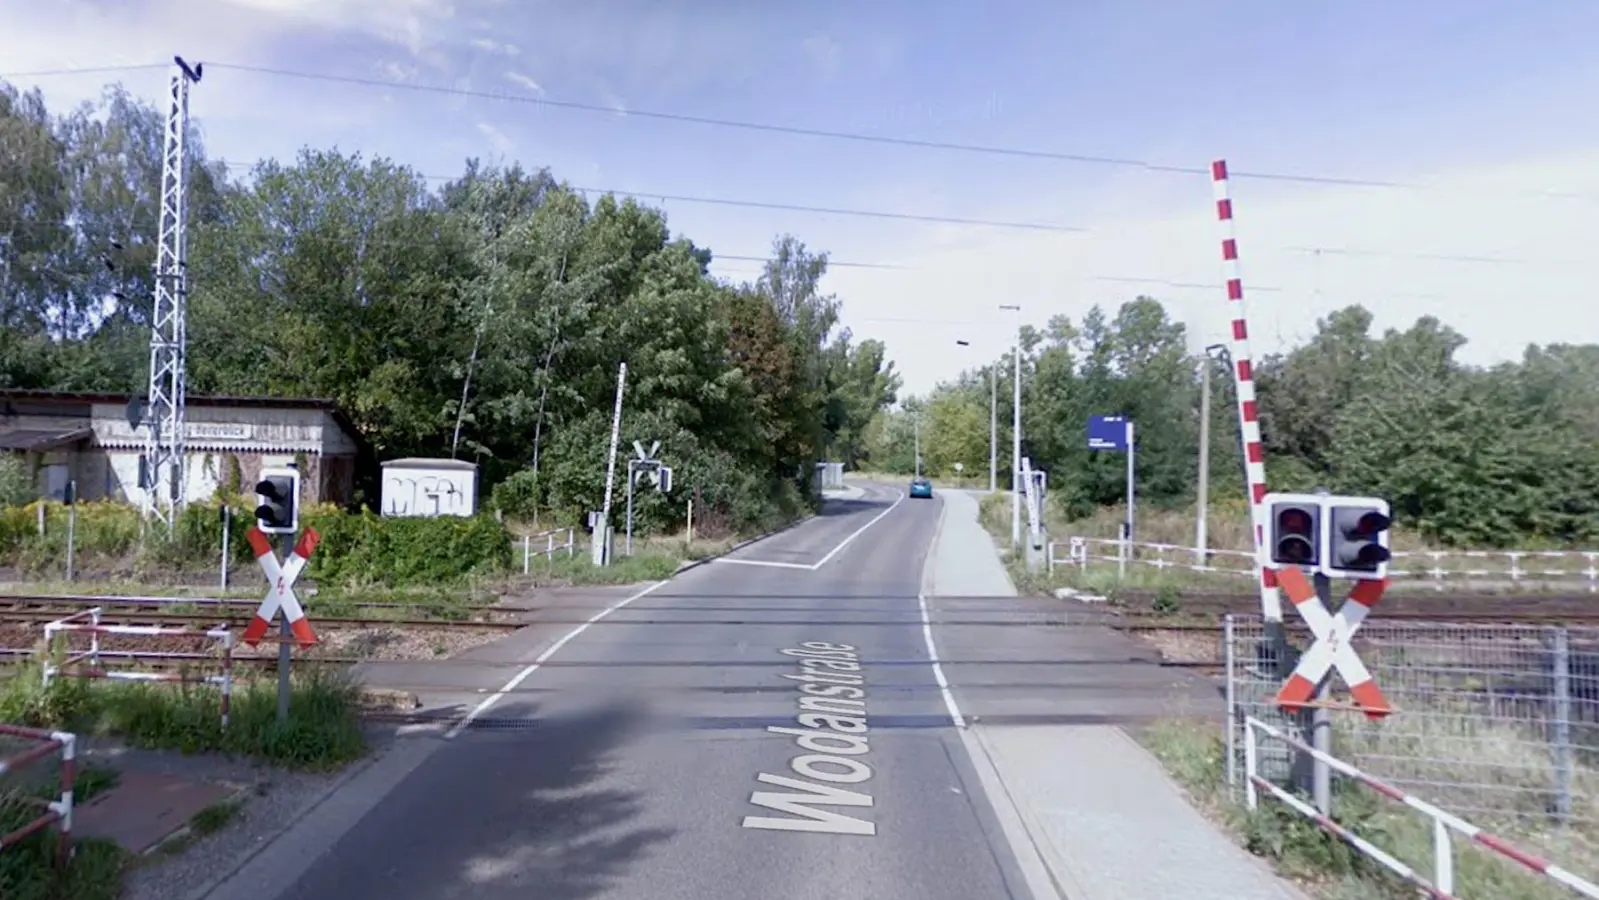 Bahnübergang Wodanstraße in Leipzig gesperrt (Foto: taucha-kompakt.de)